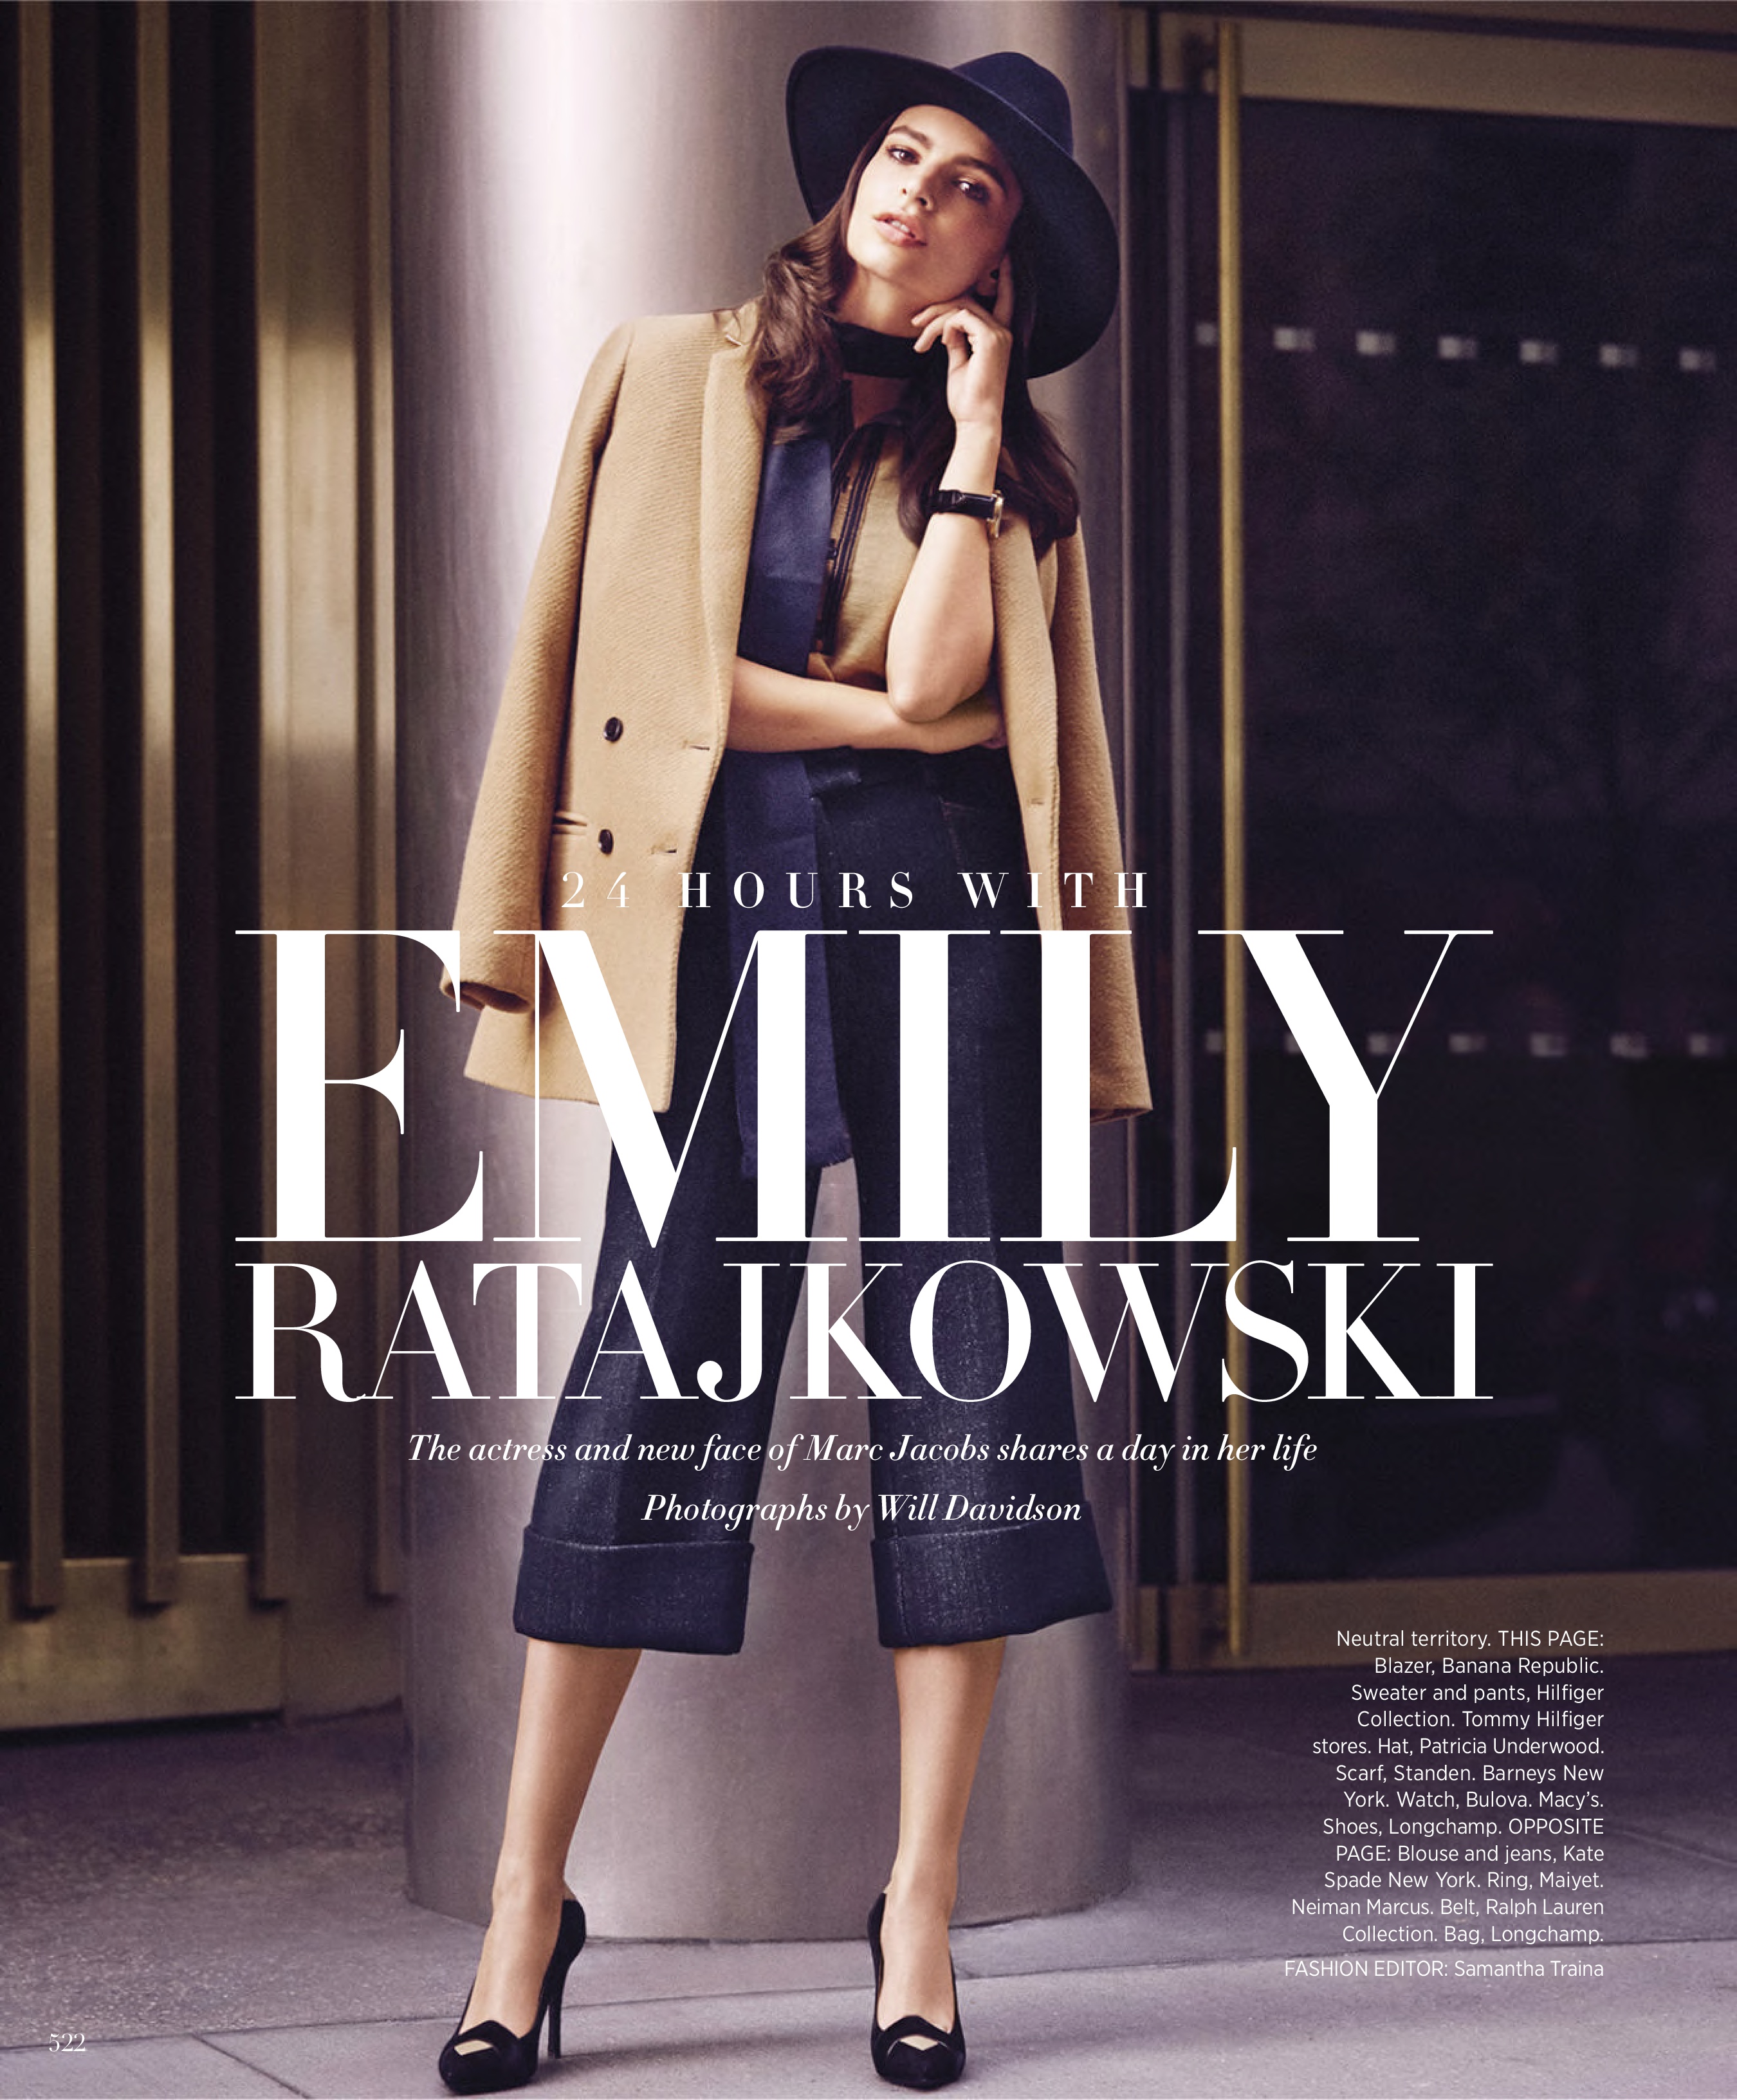 03-Em Ratajkowski by Will Davidson for Harpers Bazaar September 2015-This Is Glamorous